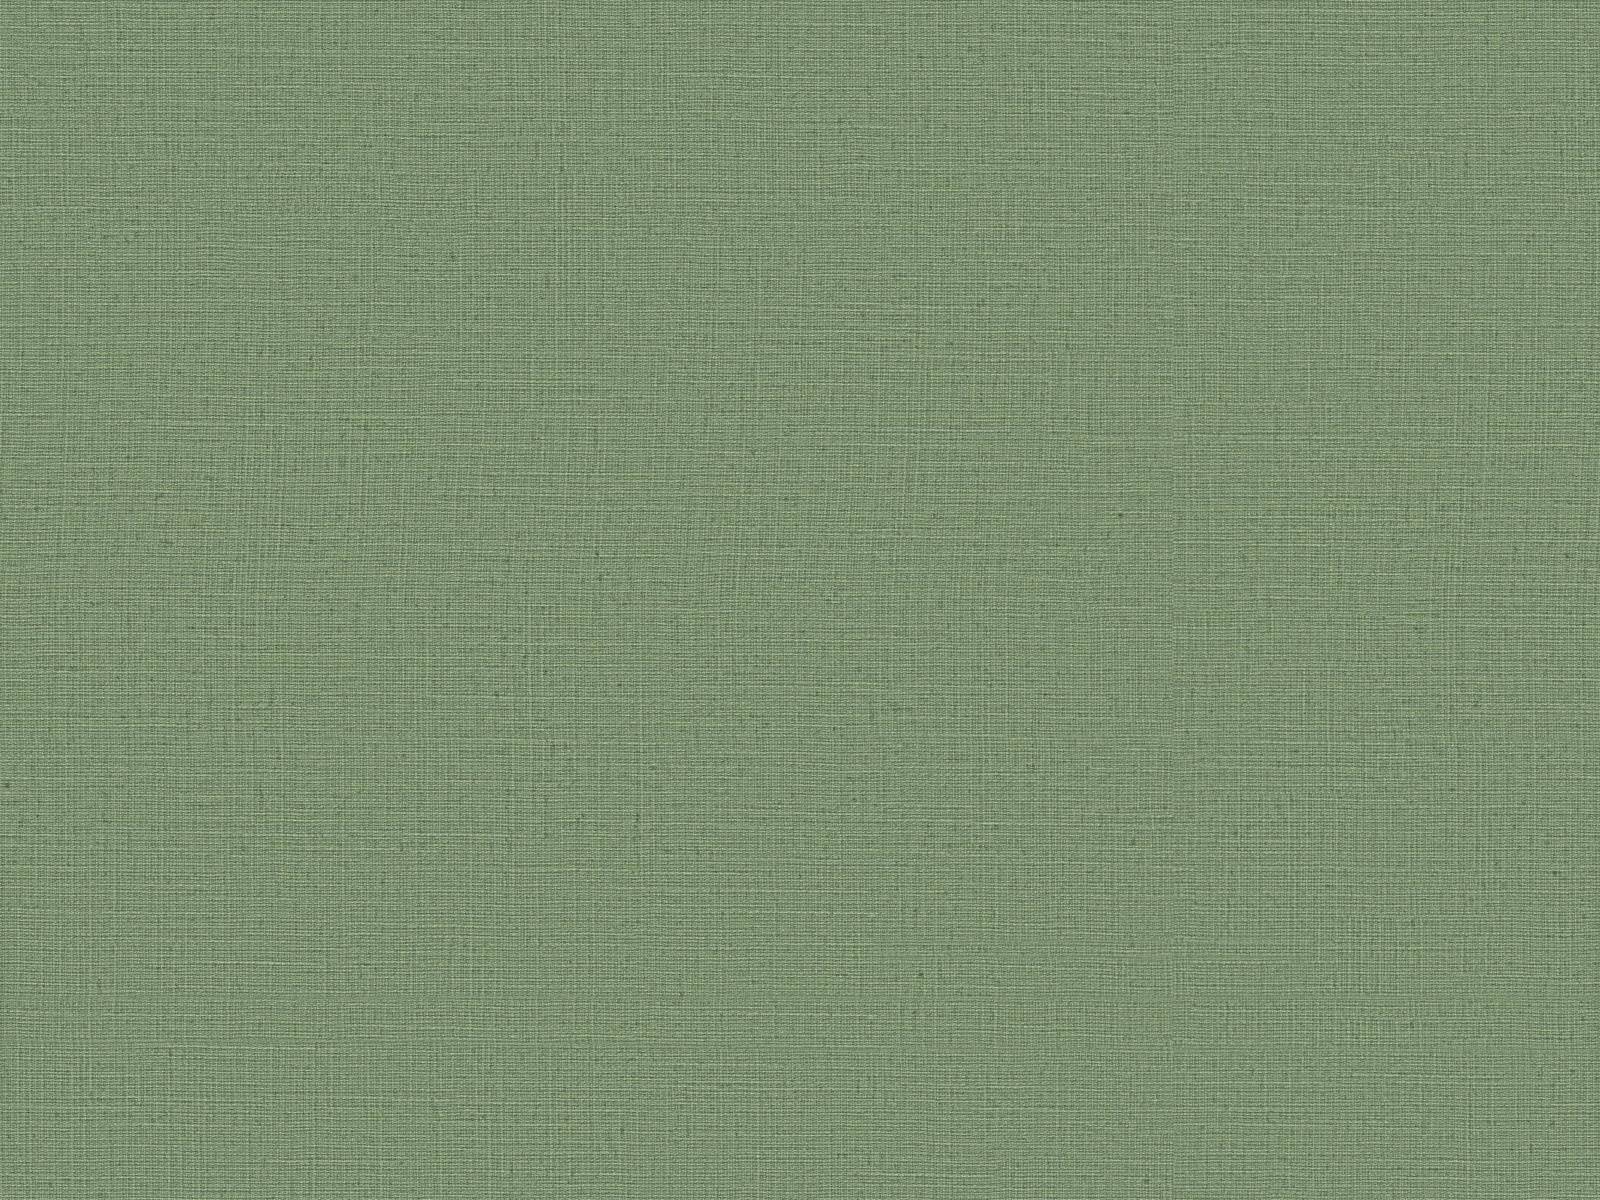 Vliesová tapeta s prirodzenou textilnou štruktúrou v zelenej farbe, ER-601637